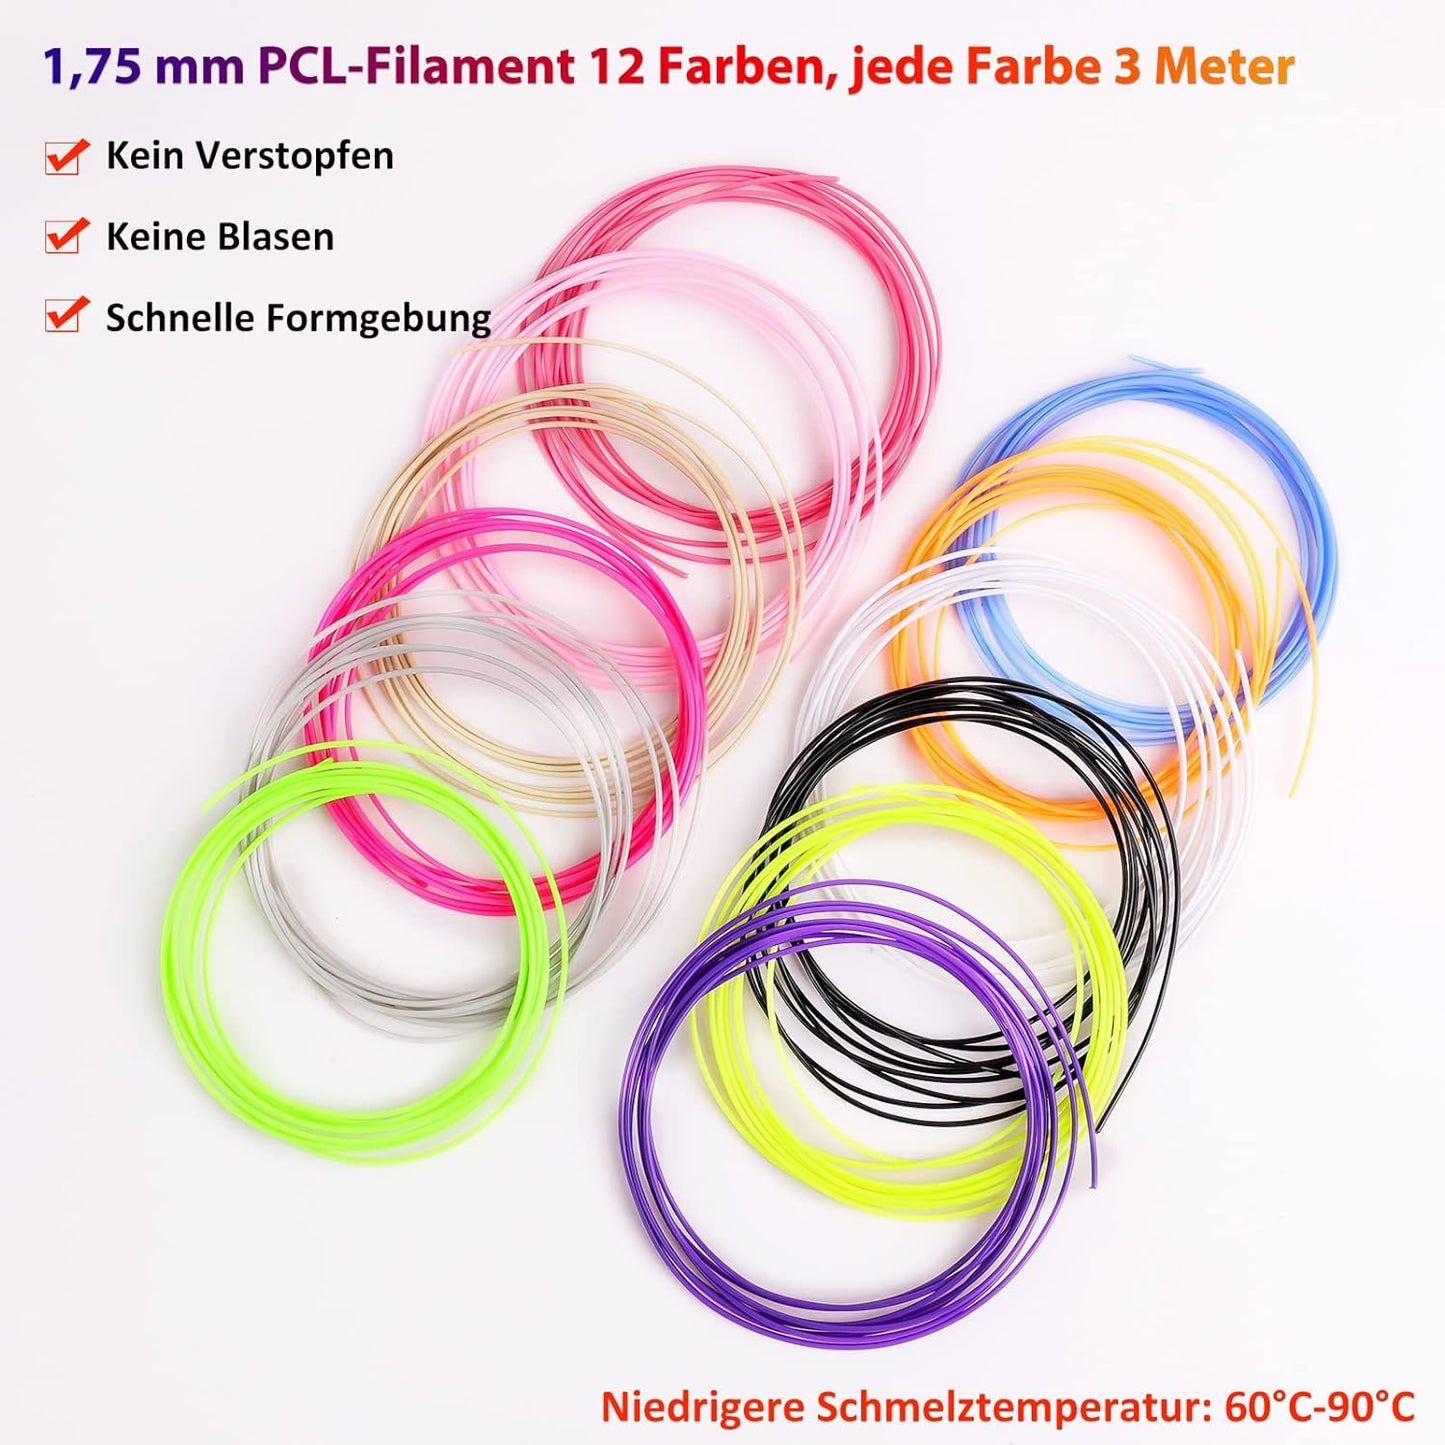 Dikale 3D Printer Pen with 1.75 mm PCL Filament Set